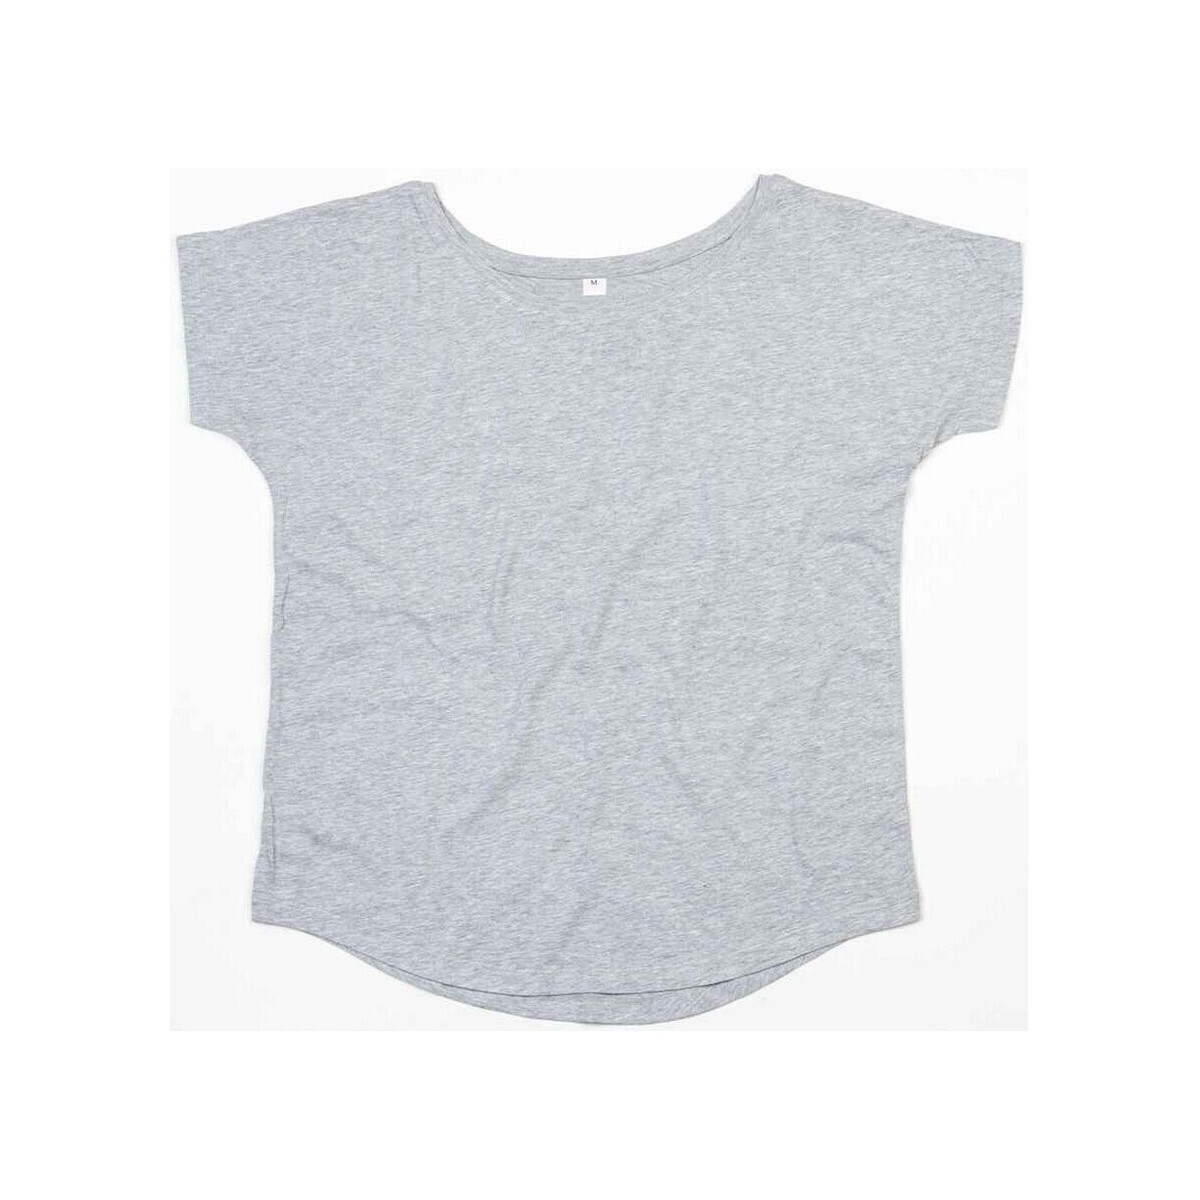 textil Mujer Camisetas manga larga Mantis M91 Gris